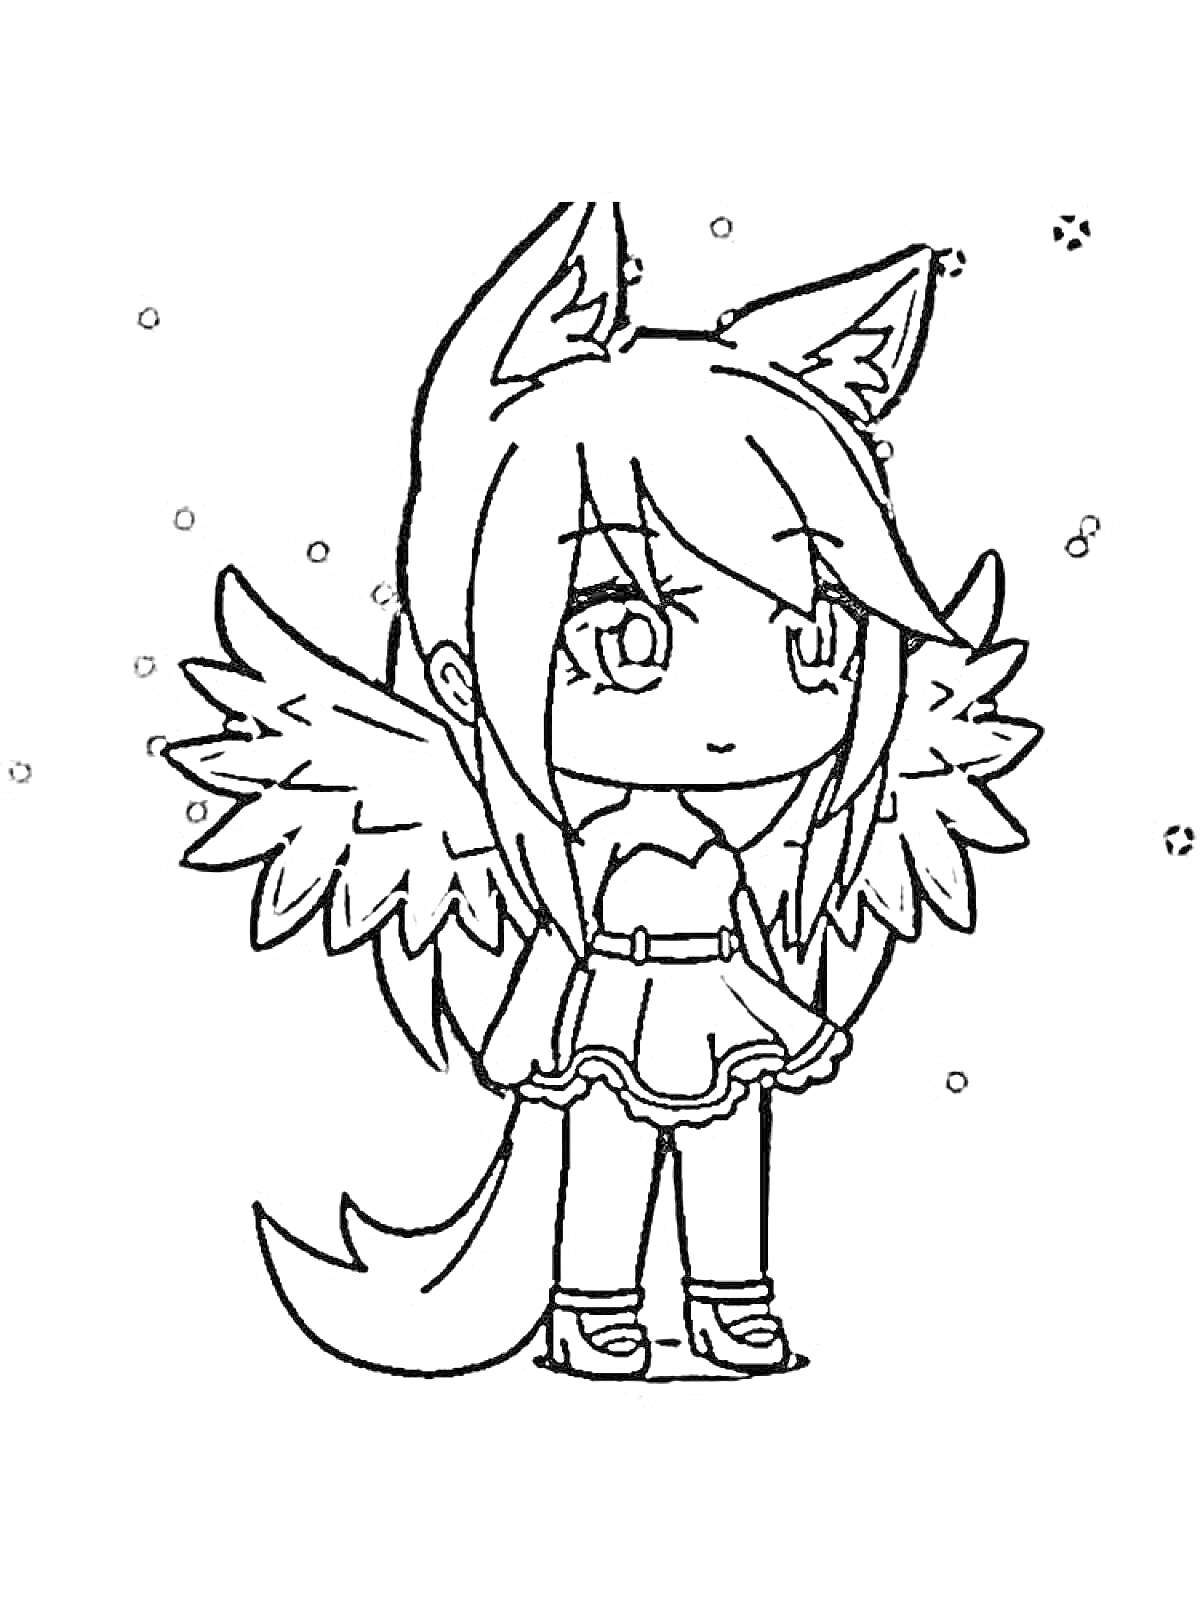 Раскраска Девочка с ушками, крыльями и хвостом на фоне снега